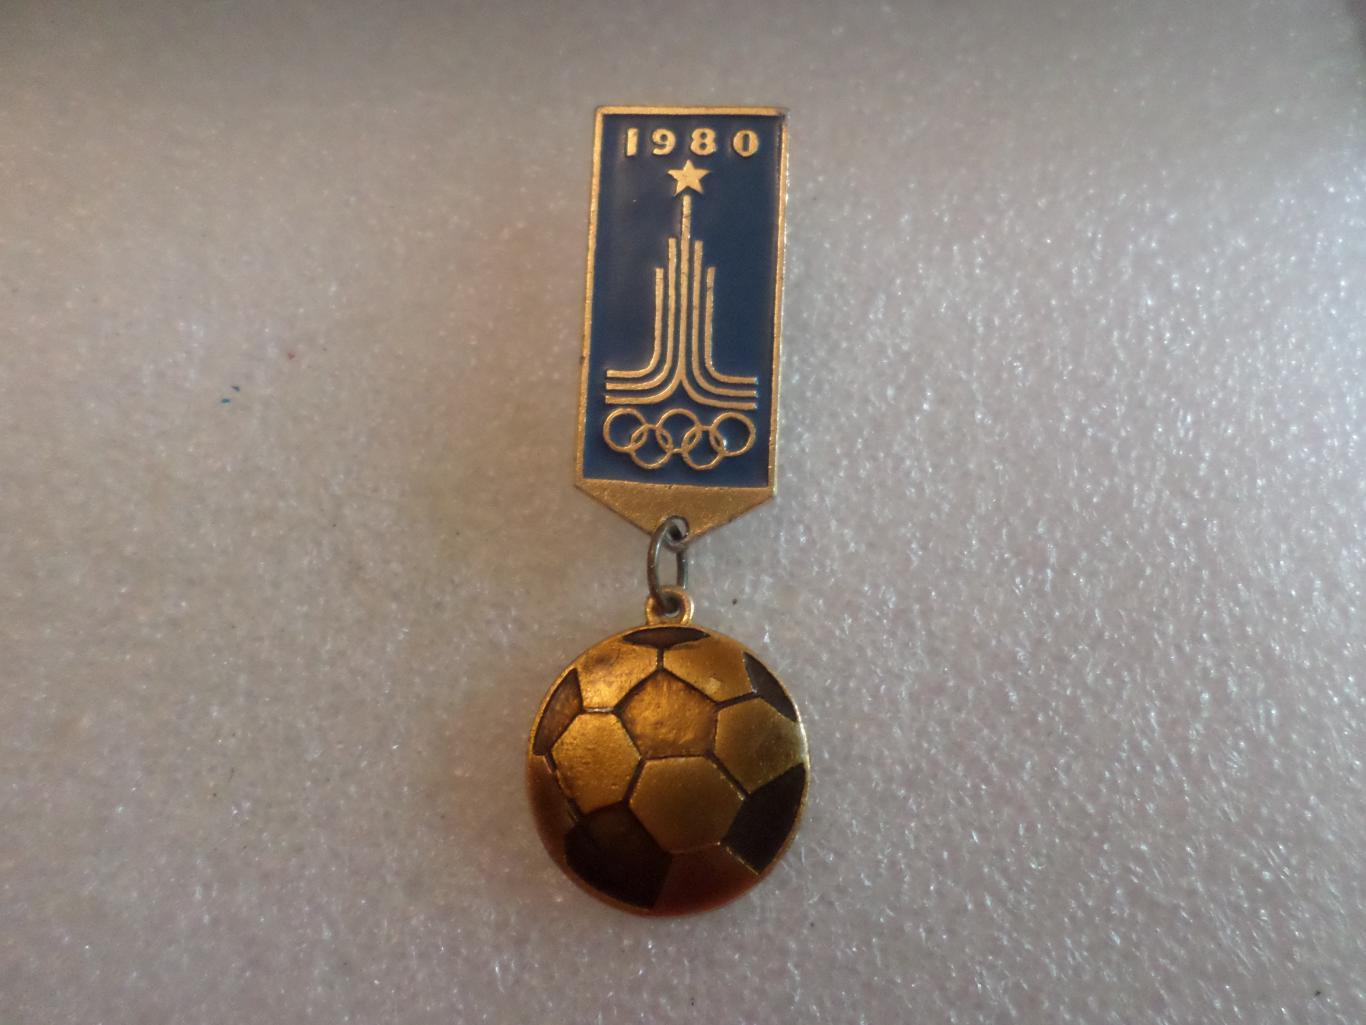 значок Олимпиада-80 Москва 1980 футбол.